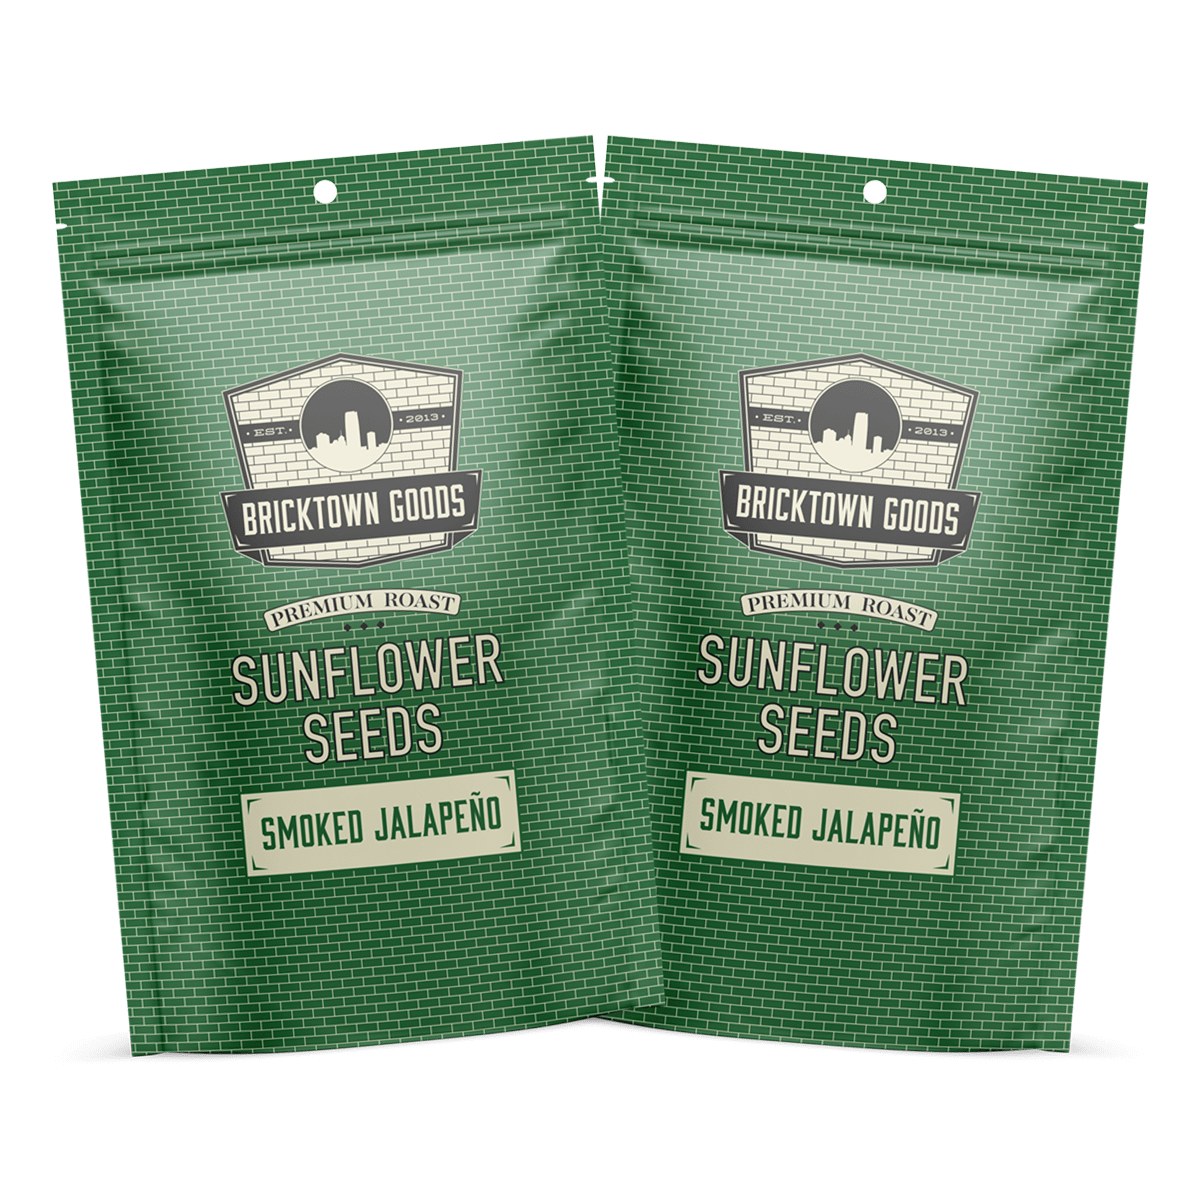 Premium Roast Sunflower Seeds - Smoked Jalapeno by Bricktown Roasters